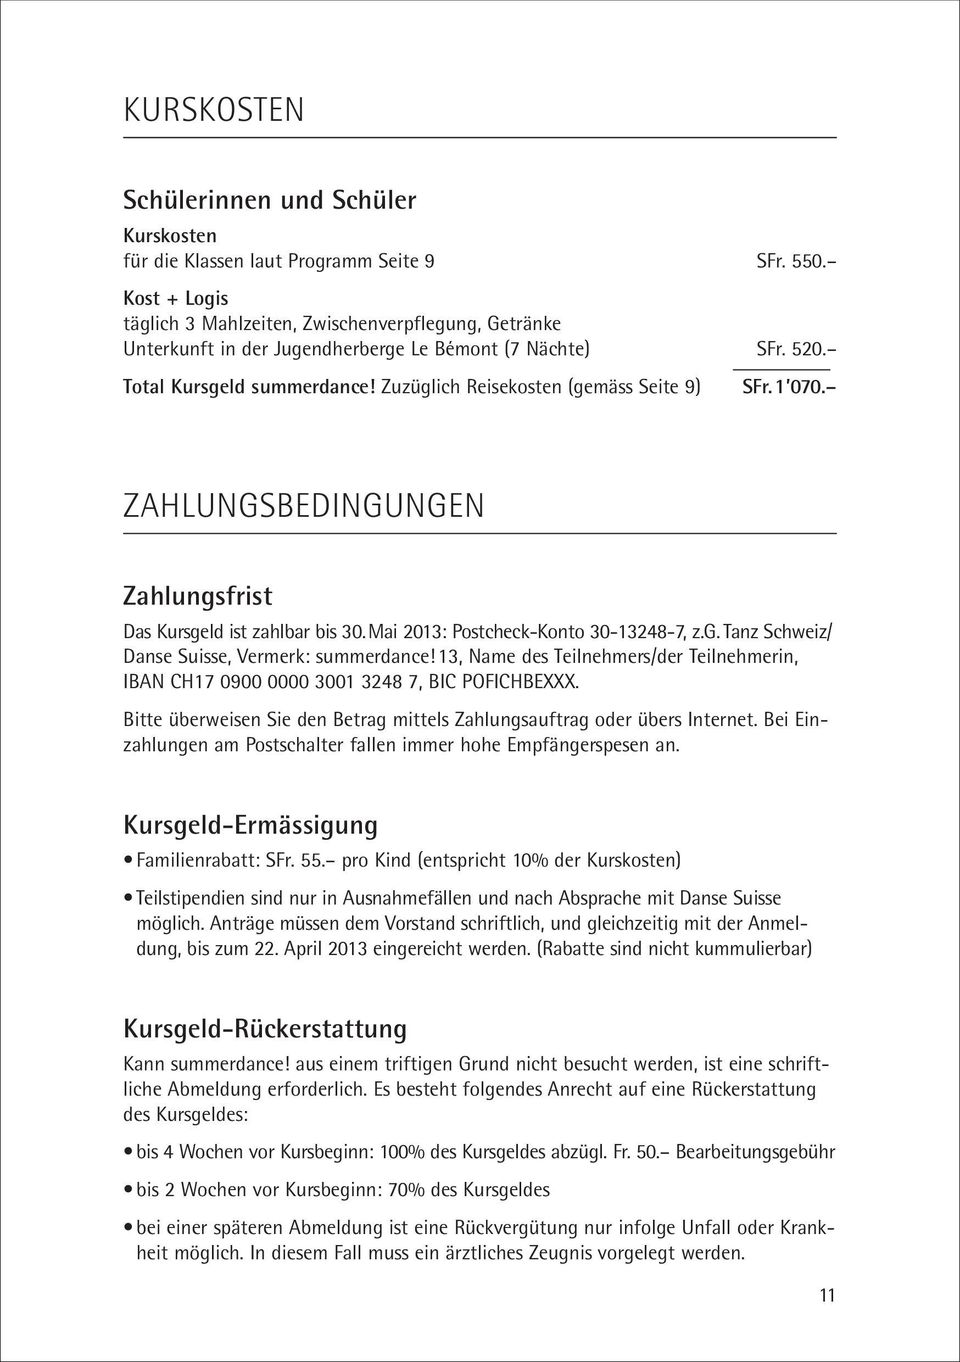 1 070. ZAHLUNGSBEDINGUNGEN Zahlungsfrist Das Kursgeld ist zahlbar bis 30.Mai 2013: Postcheck-Konto 30-13248-7, z.g. Tanz Schweiz/ Danse Suisse, Vermerk: summerdance!